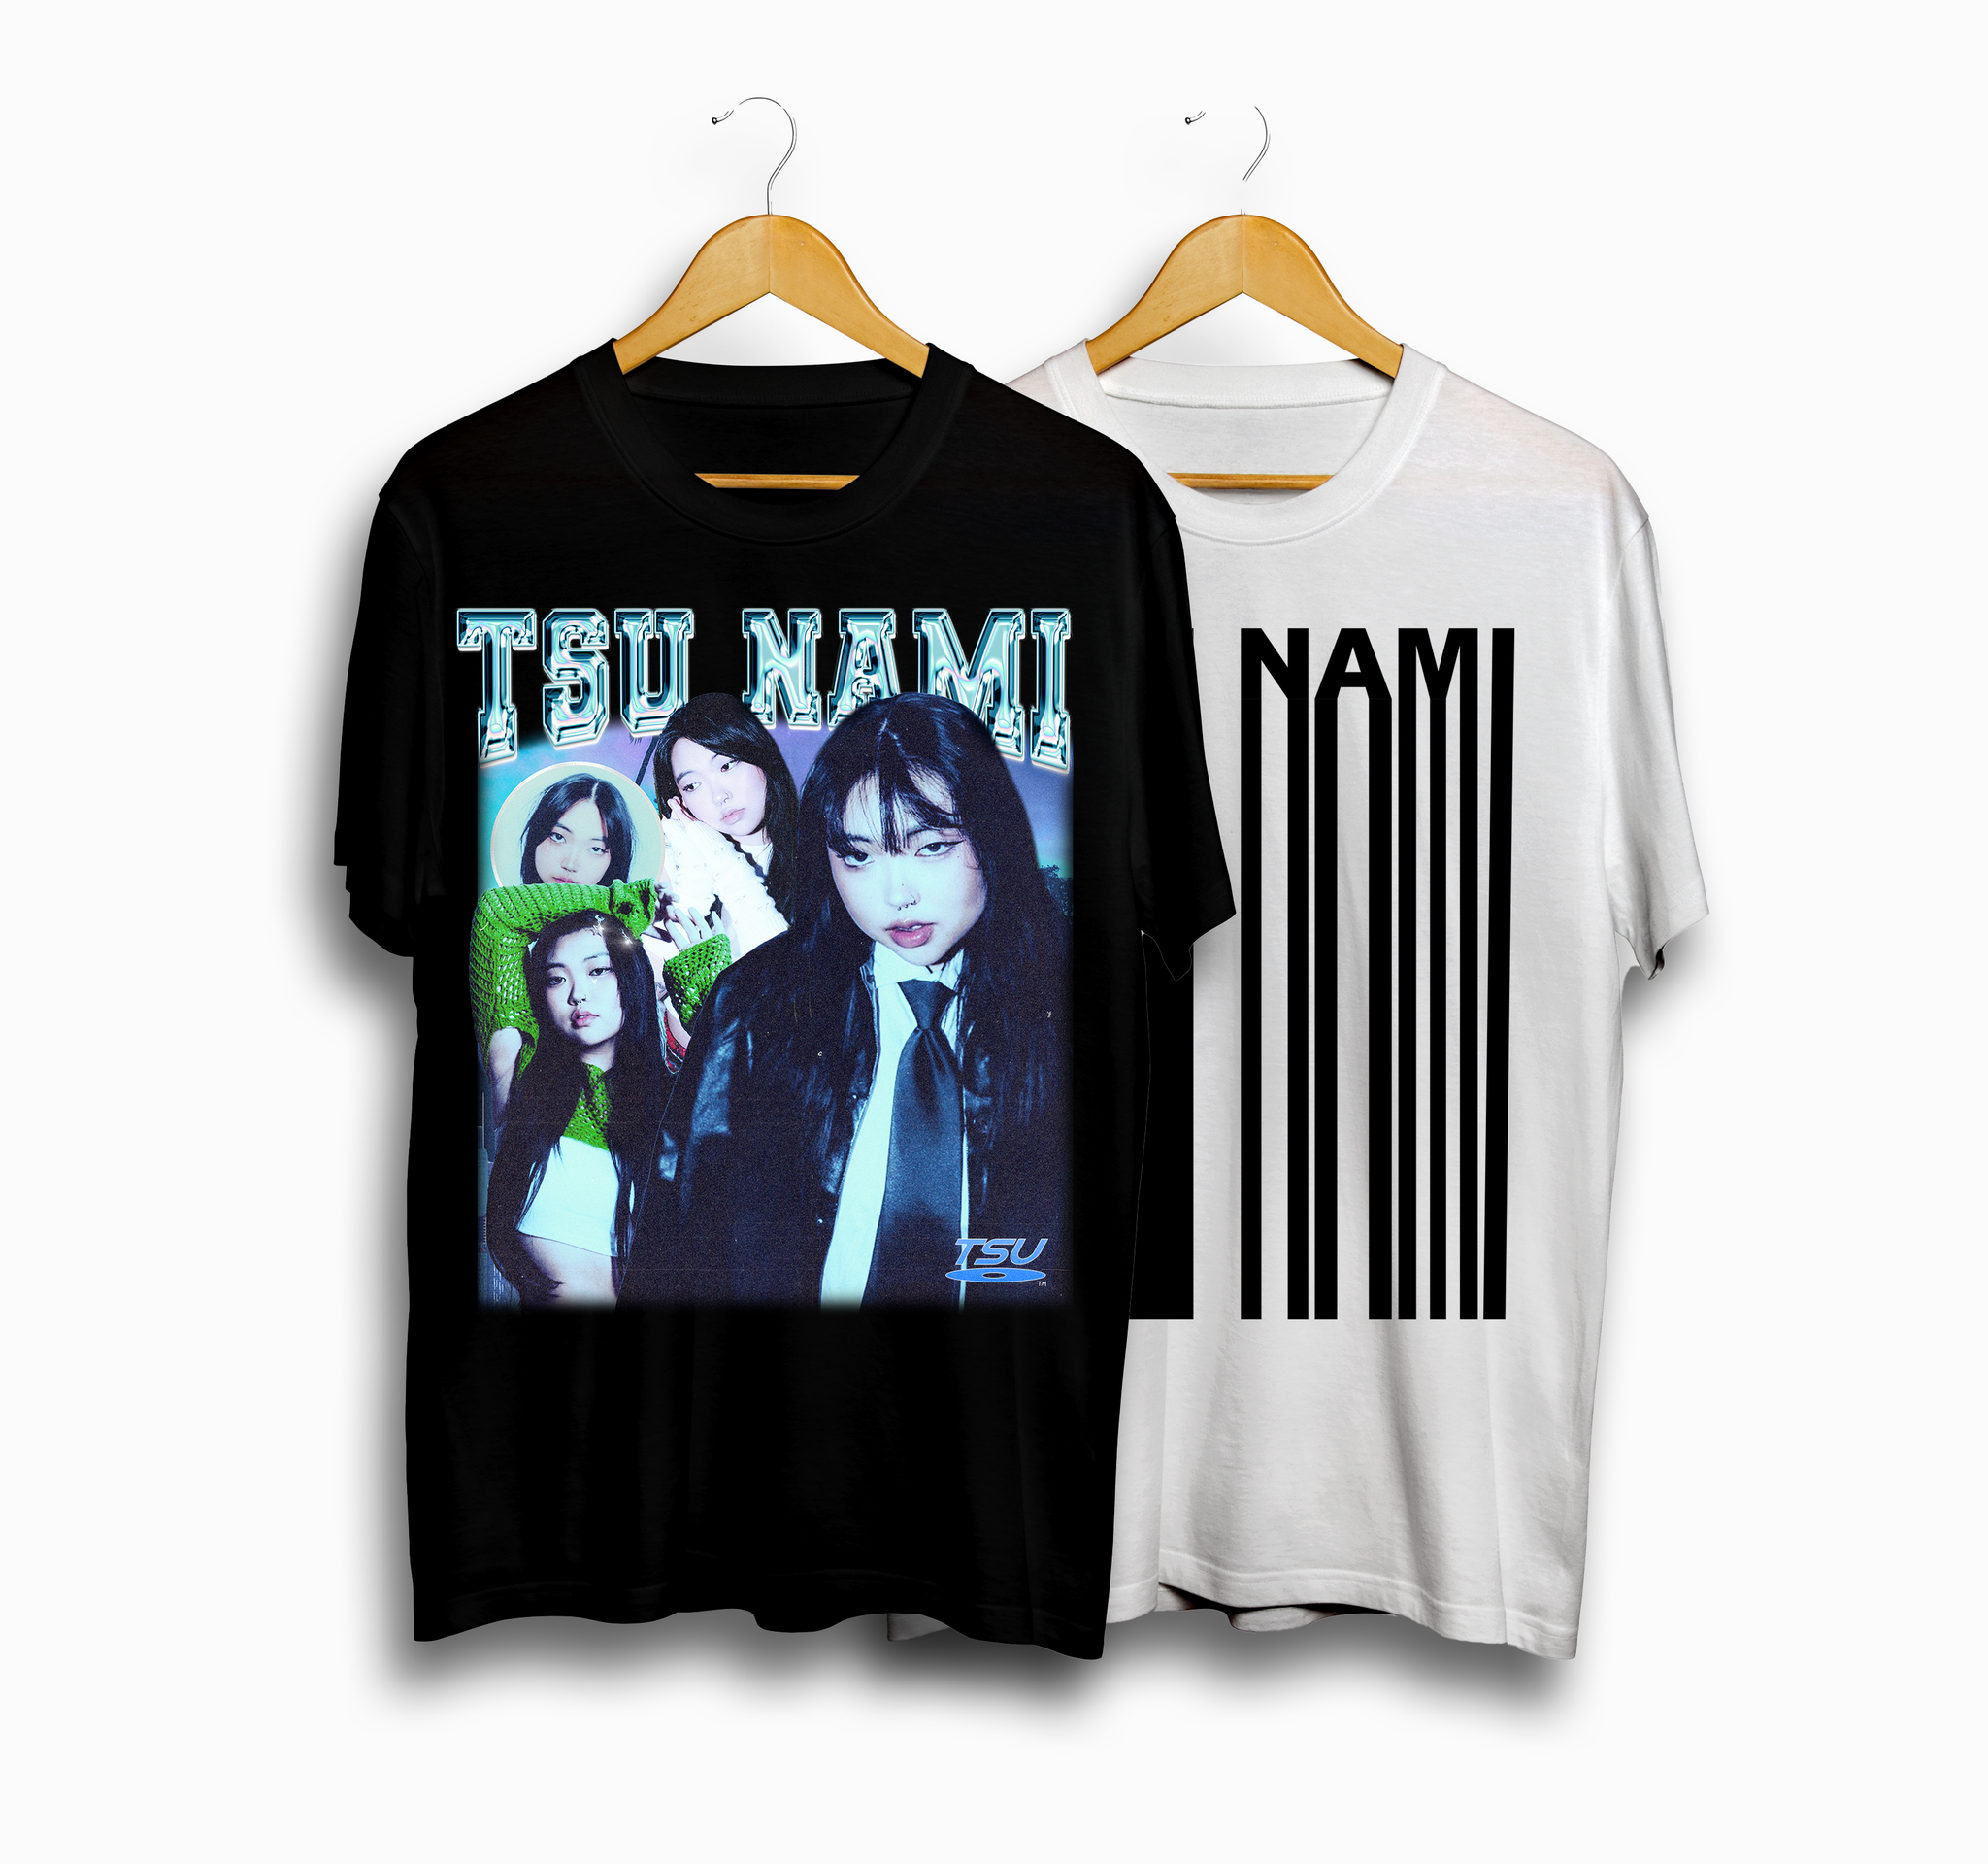 Tsu Nami T-Shirt Bundle